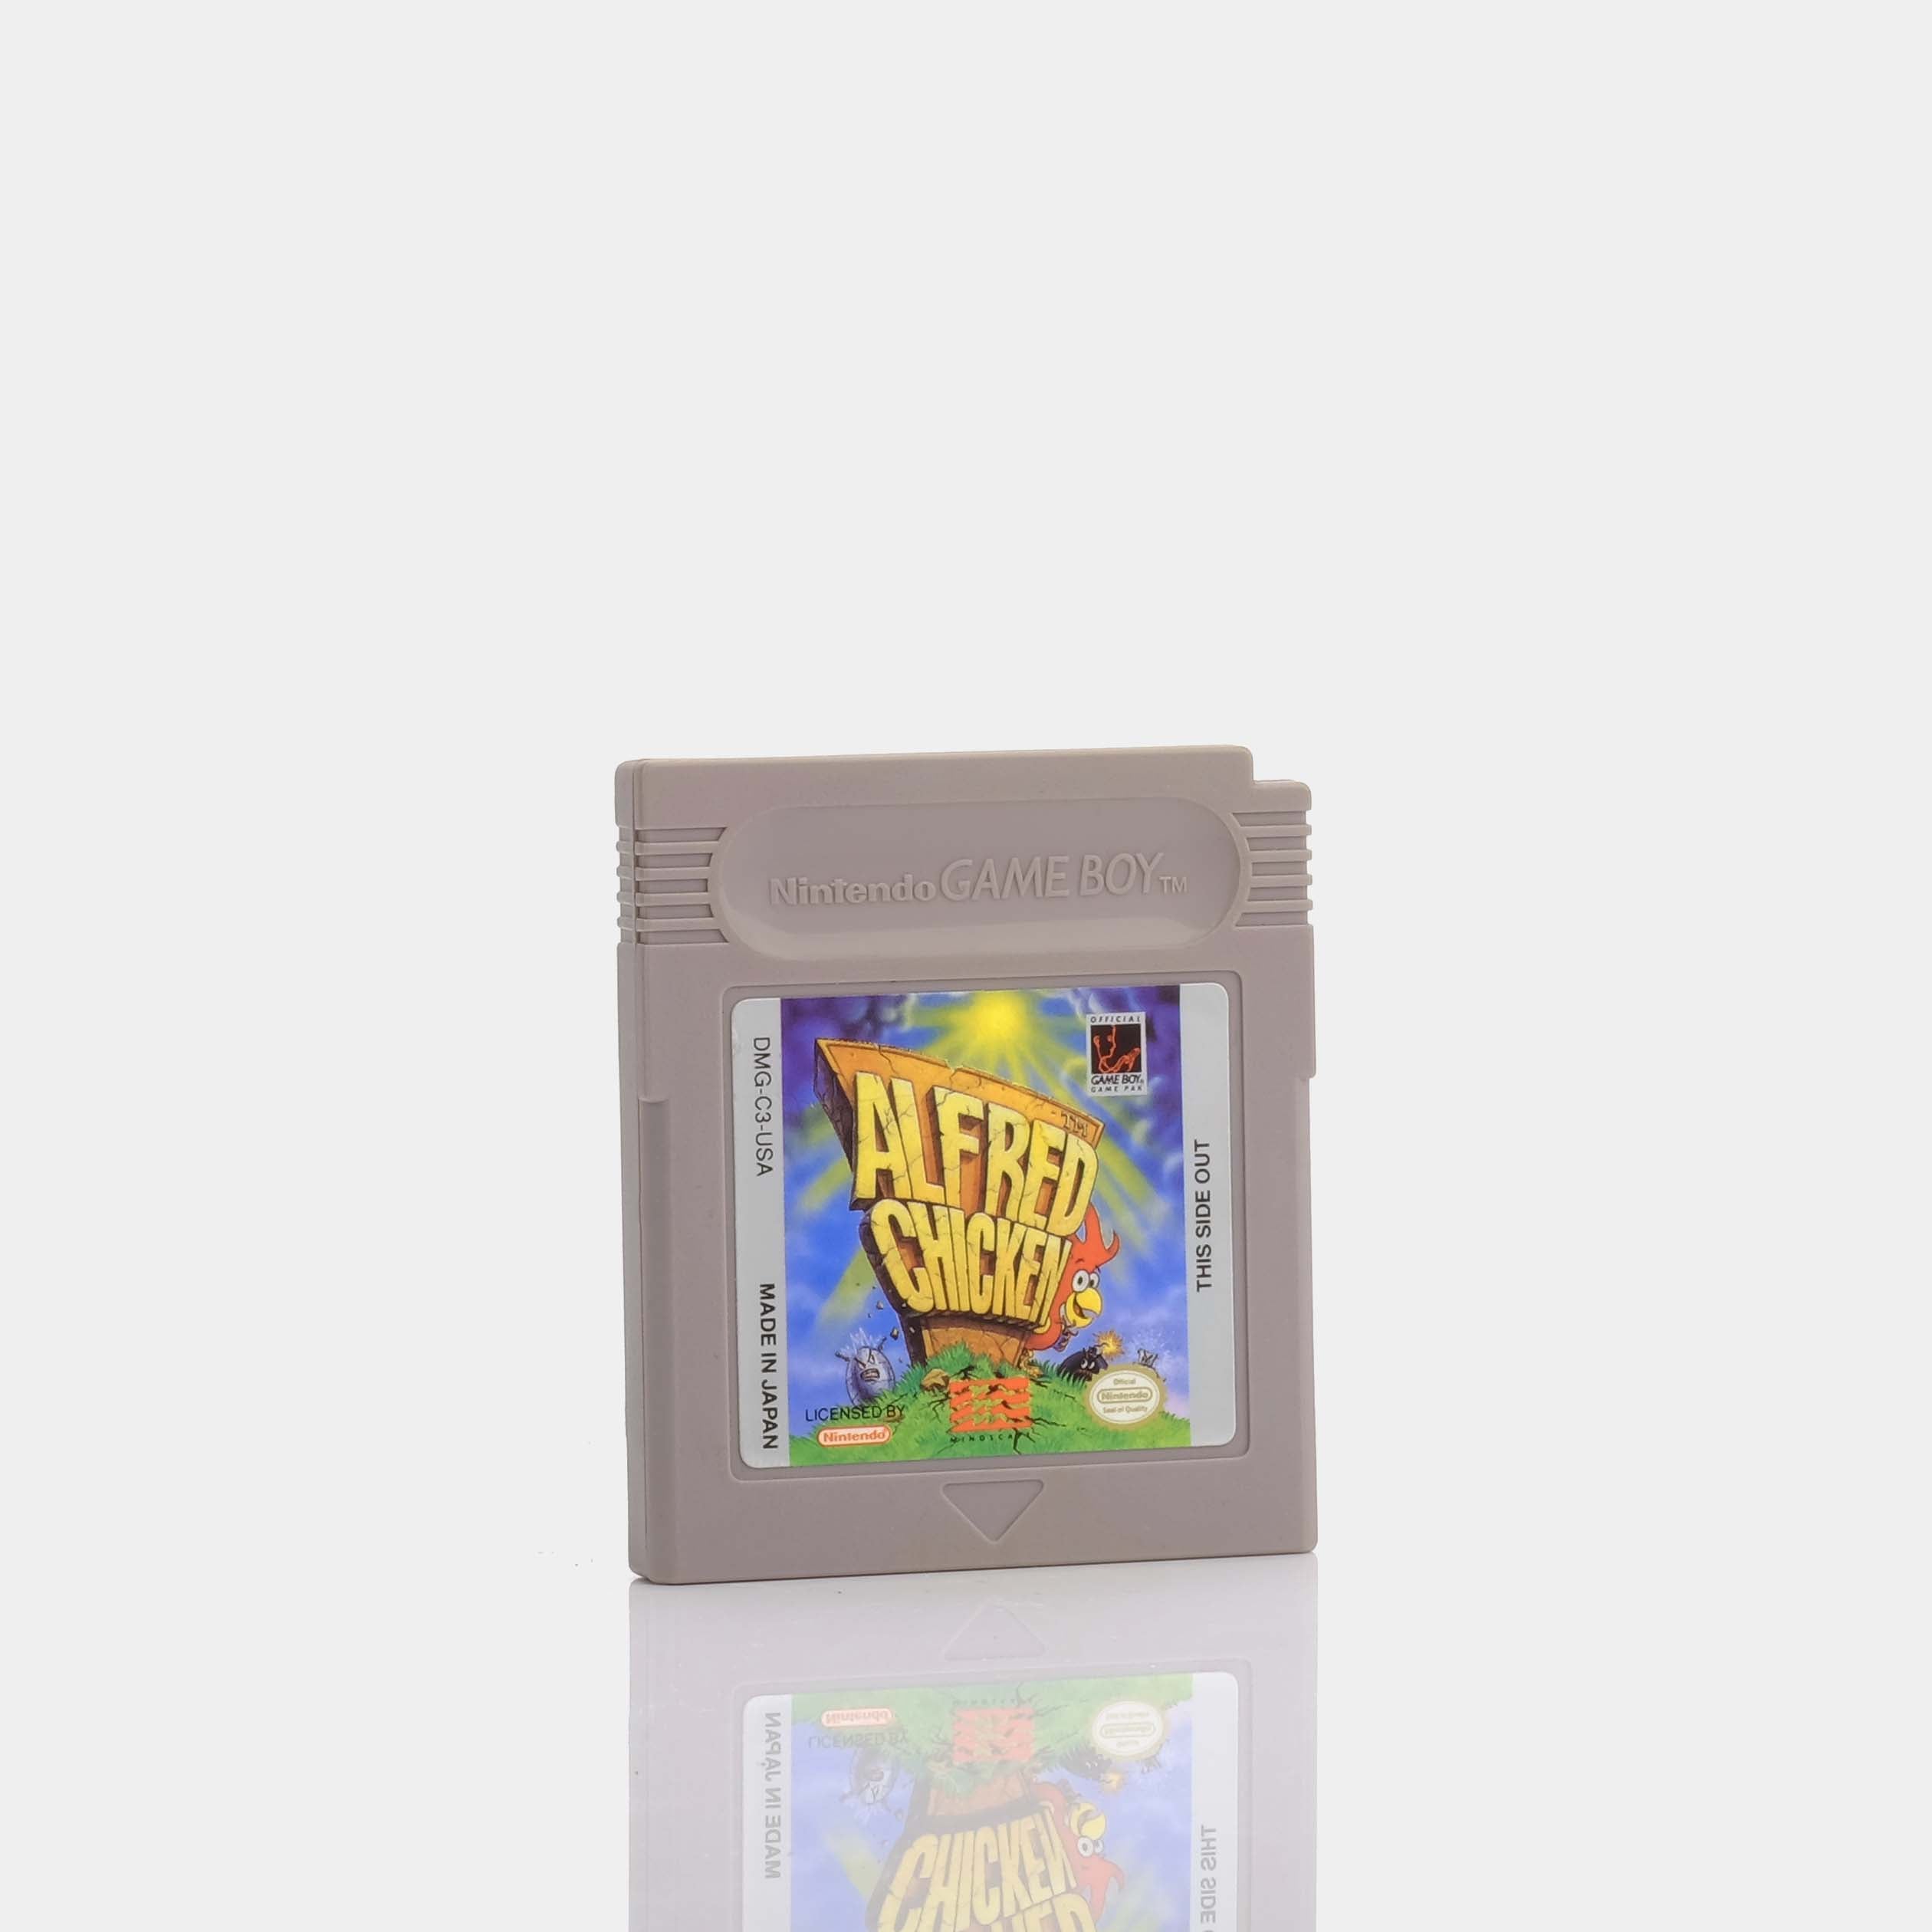 Alfred Chicken (1994) Game Boy Game